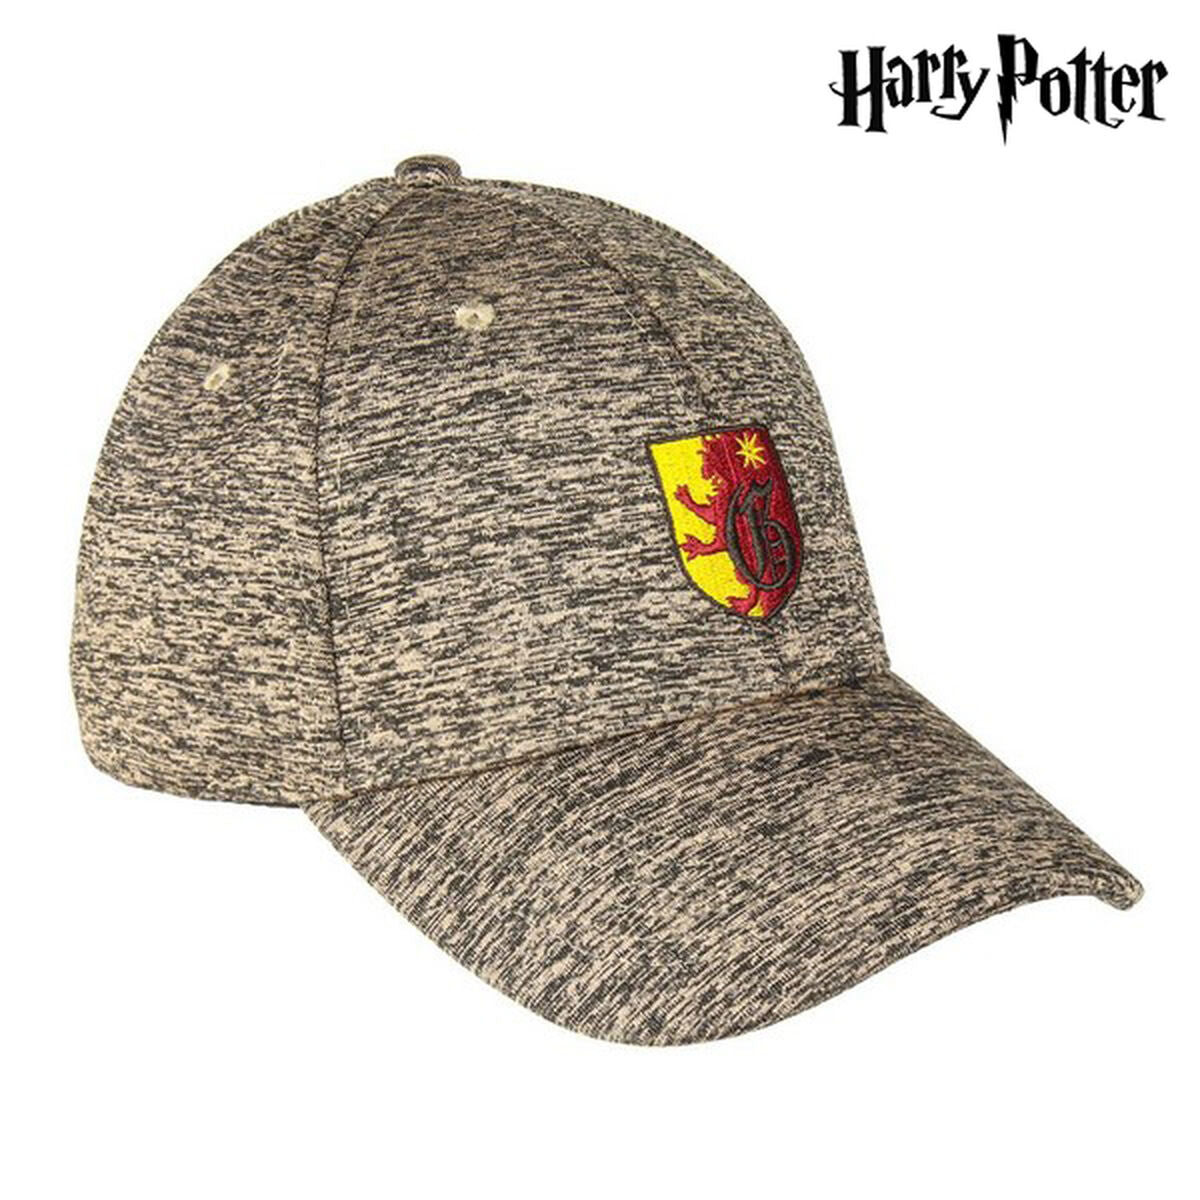 Keps Baseball Harry Potter 75330 Brun (58 cm)